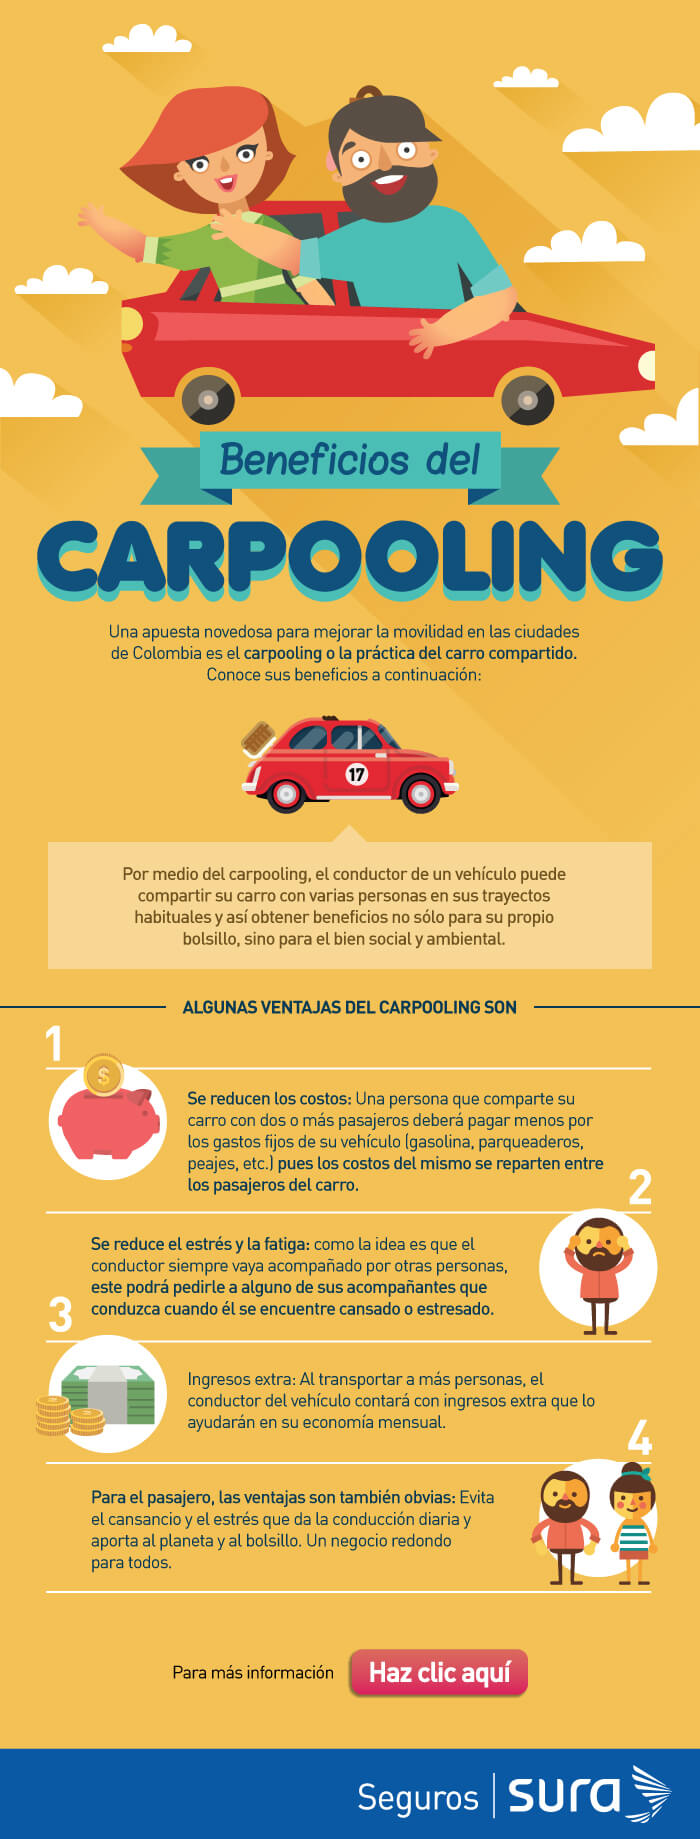 5 recomendaciones para no perder el control del volante - Seguros SURA  Colombia